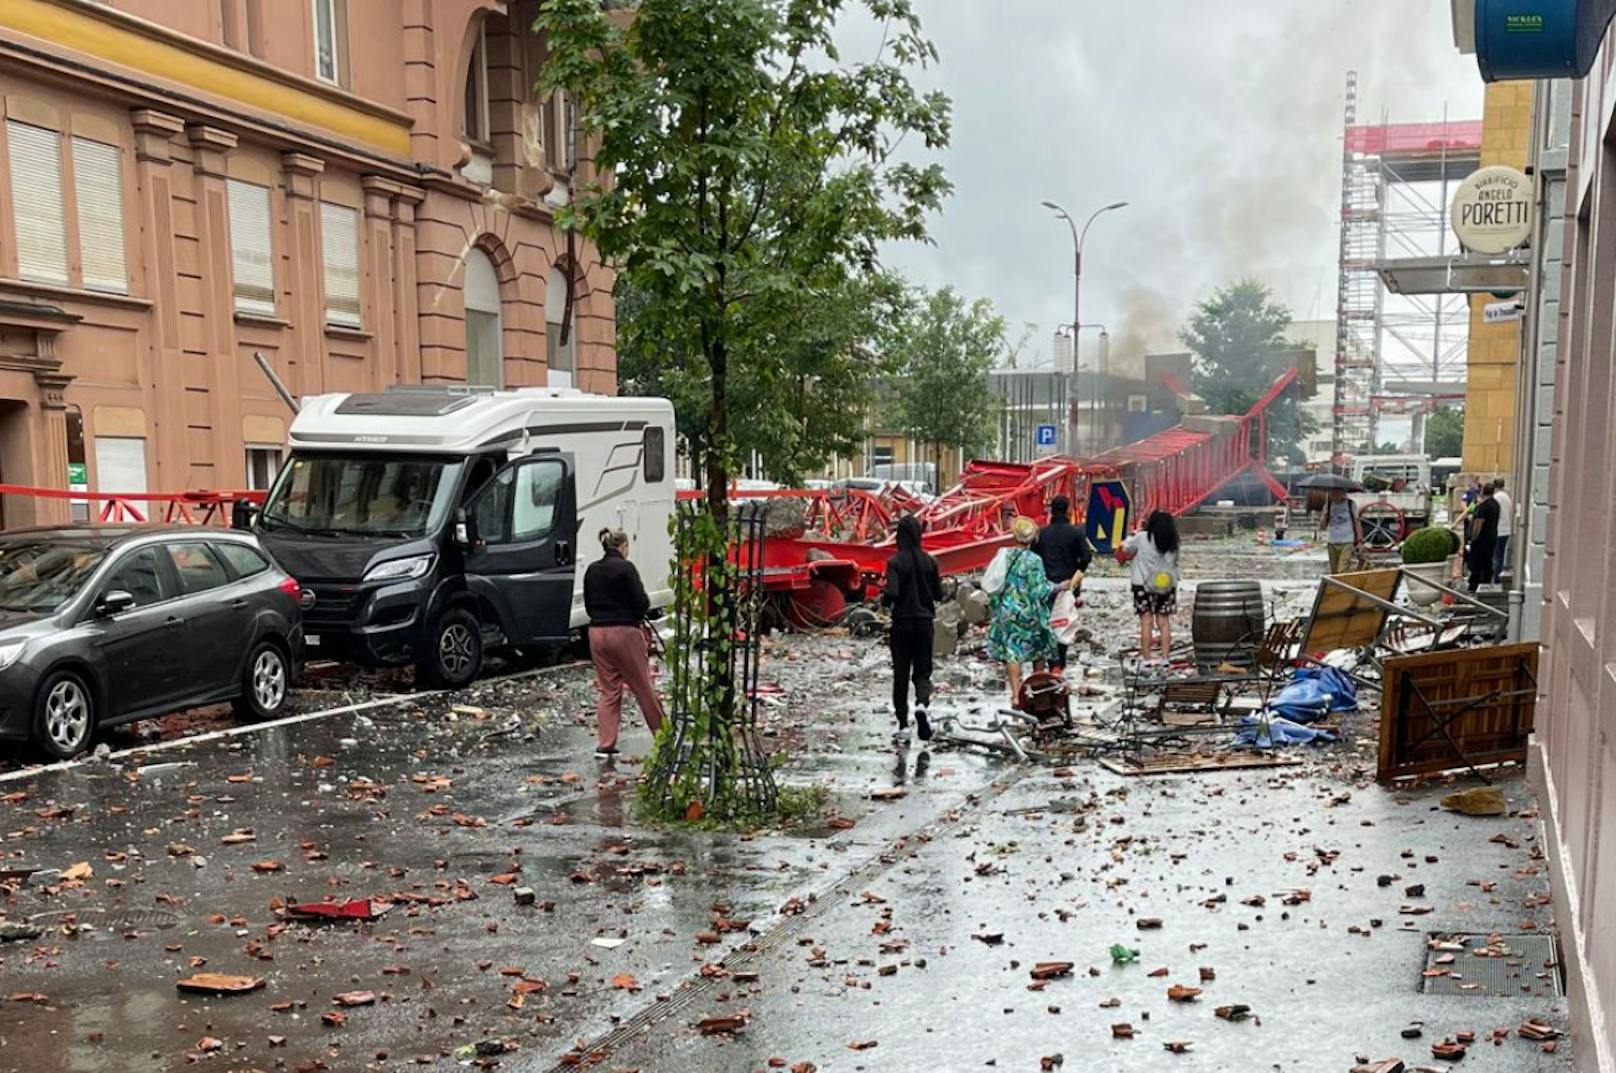 Fotos von News-Scouts des "Heute"-Partnerportals "20 Minuten" zeigen die schweren Schäden nach dem Tornado-Unwetter in der Westschweiz am 24. Juli 2023.